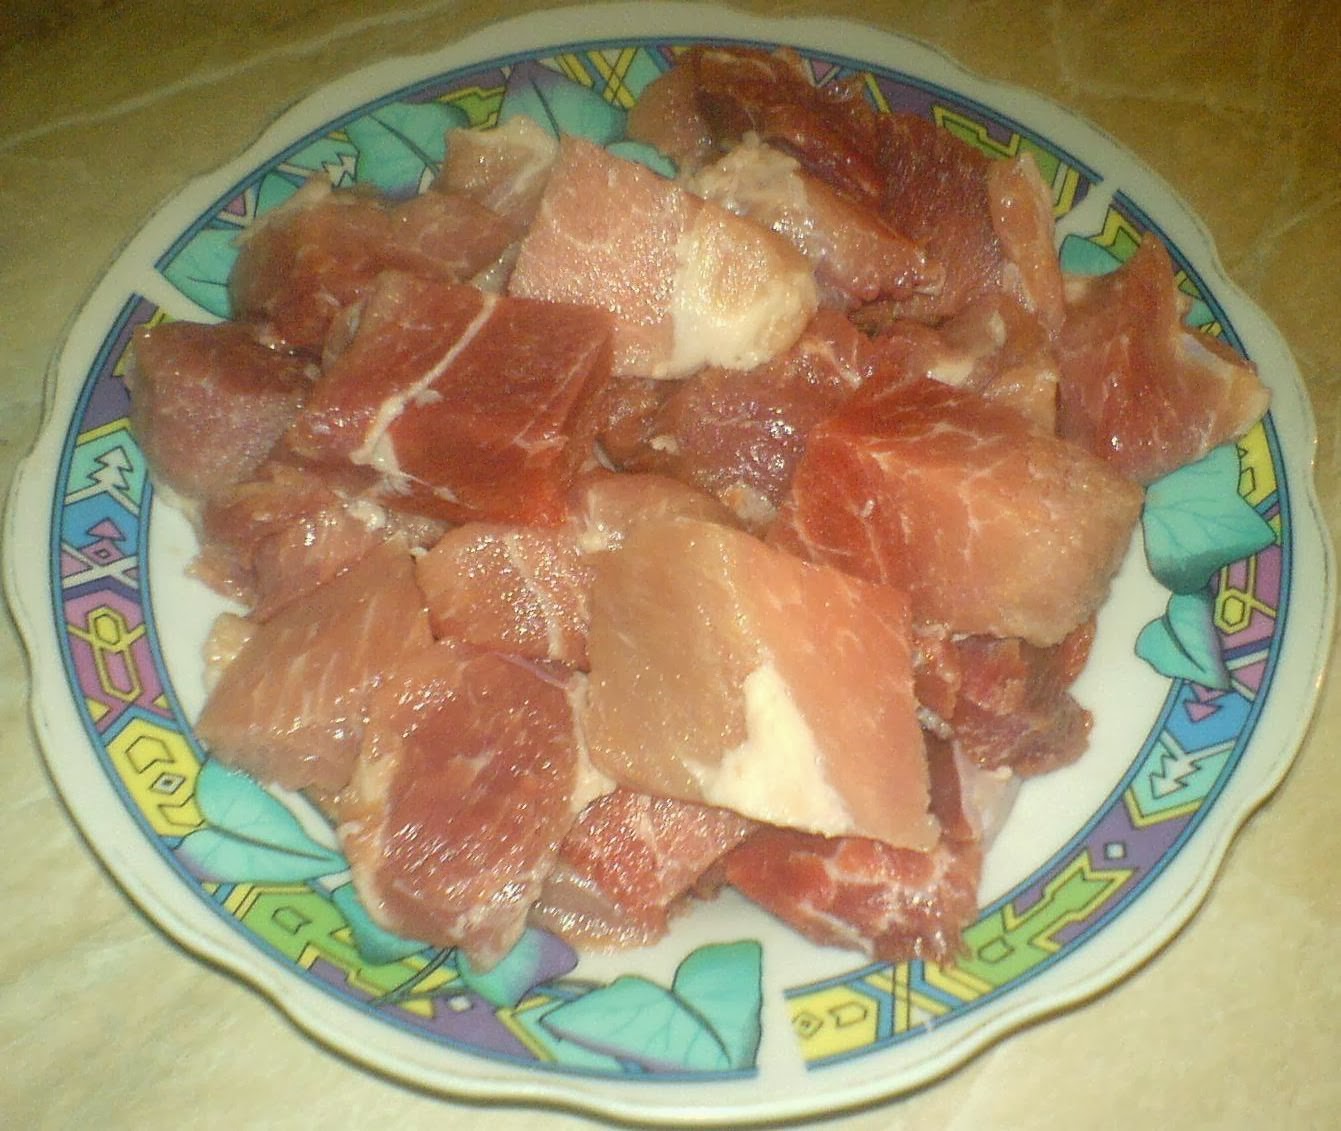 retete si preparate culinare cu carne de porc, retete de mancare, mancare cu carne de porc, spata de porc, carne de porc, retete culinare,